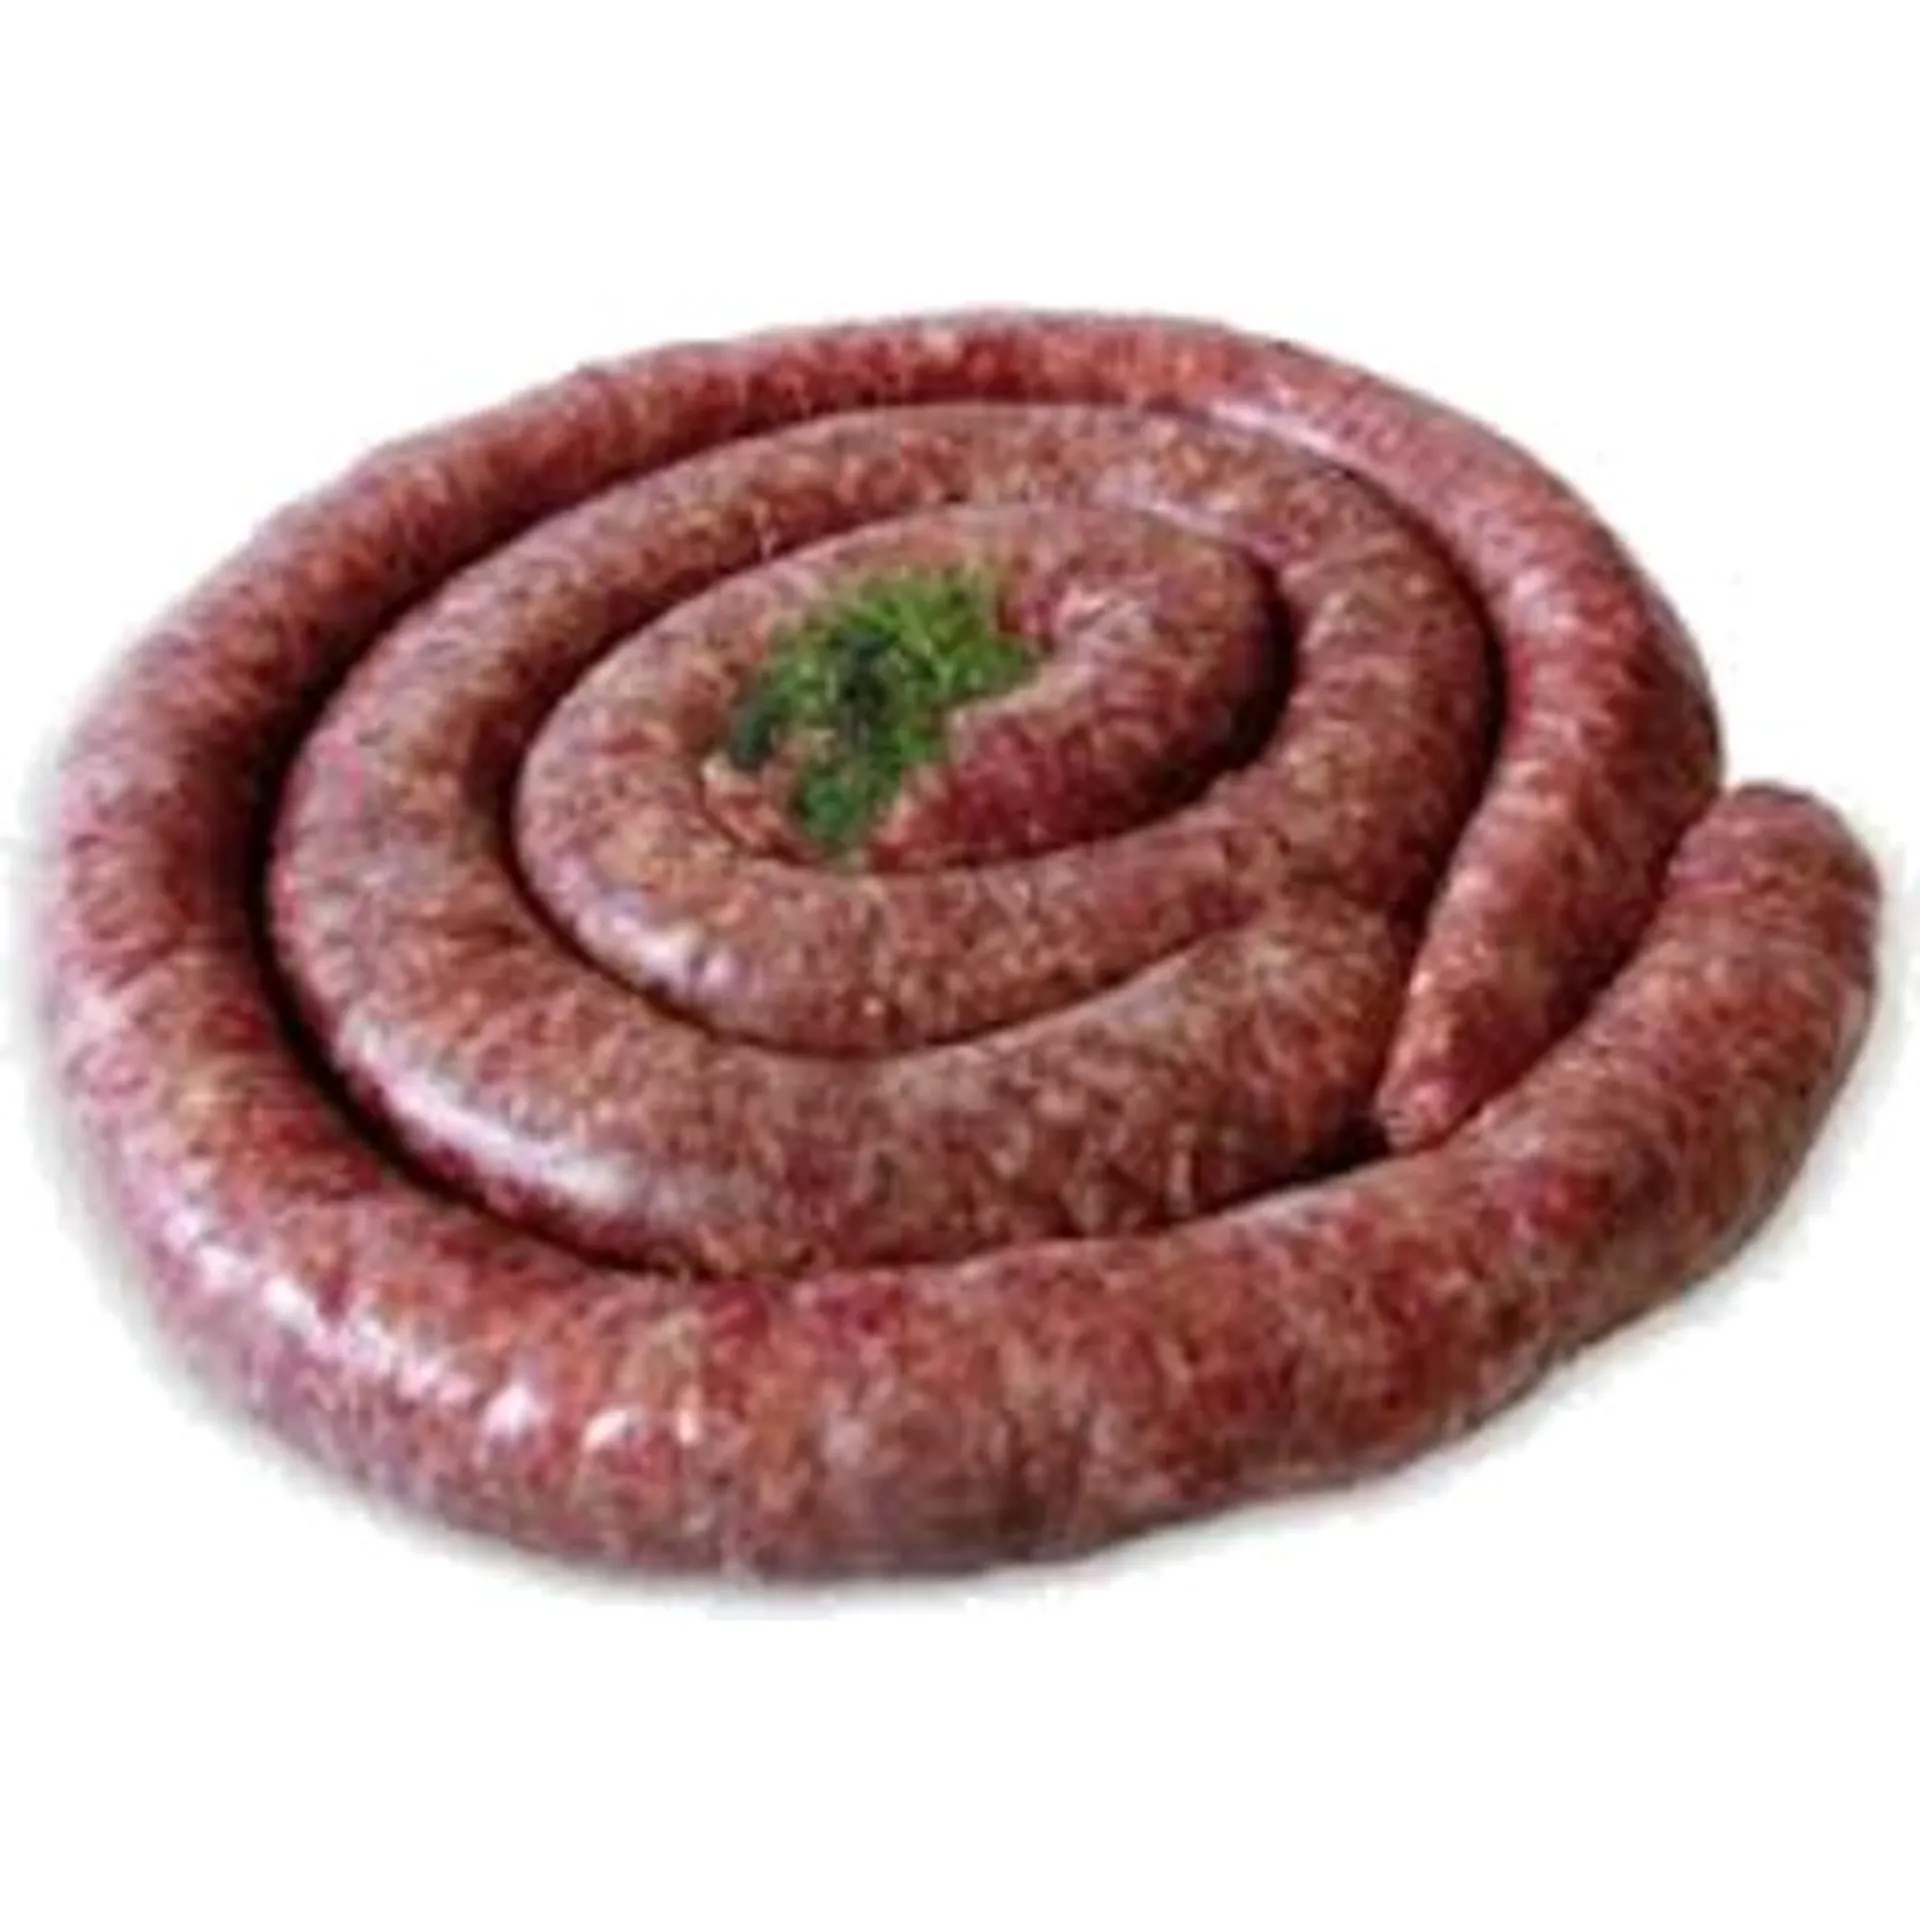 Boerewors Sausages